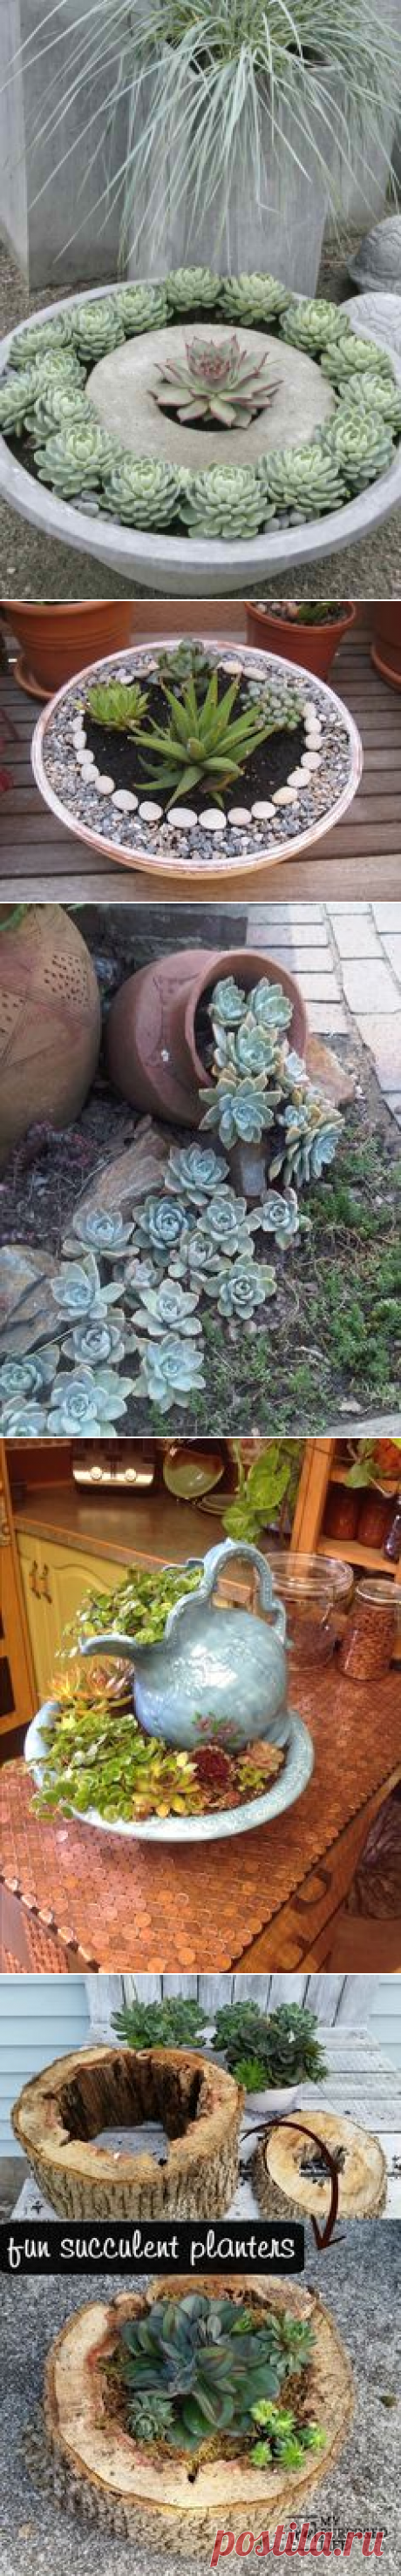 Succulent planters | Garden Ideas/Flowers ETC